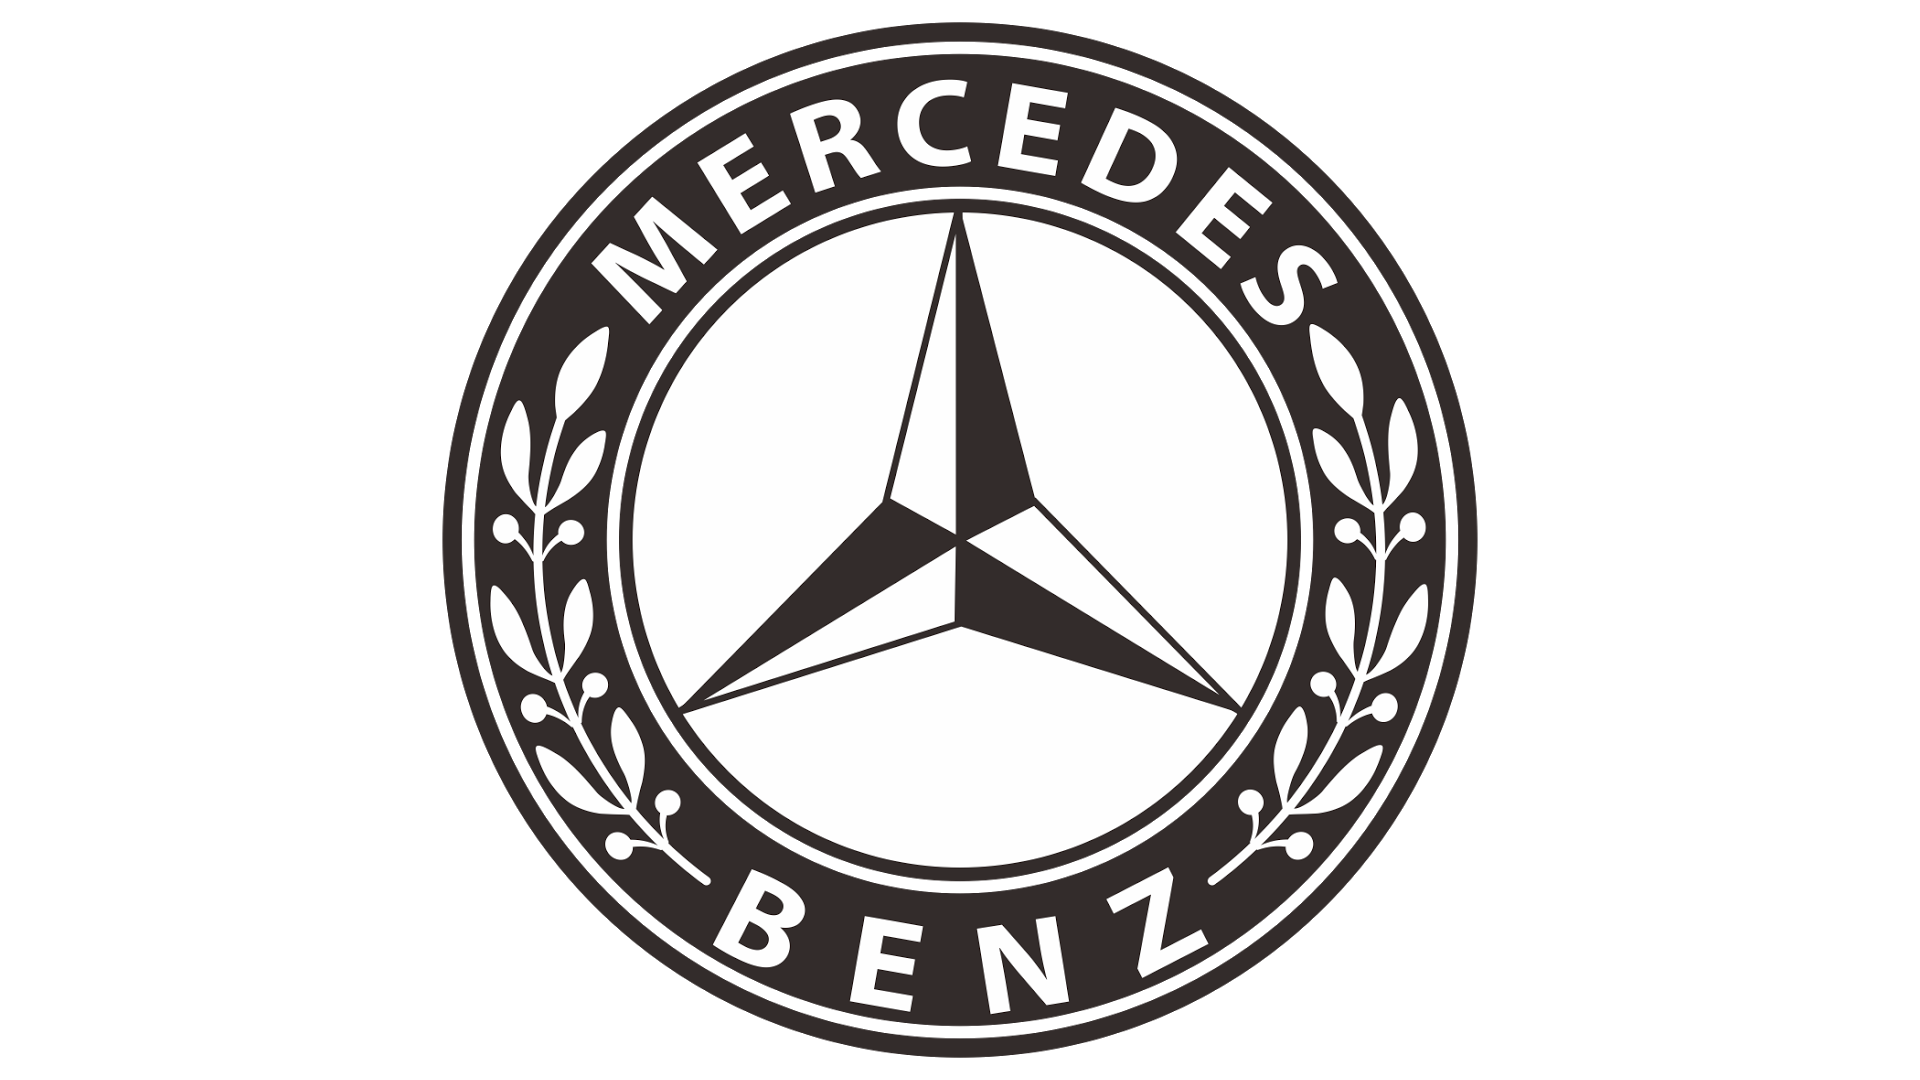 Mercedes Benz Emblem (1926) 1920X1080 (Hd 1080P) - Mercedes Benz, Transparent background PNG HD thumbnail